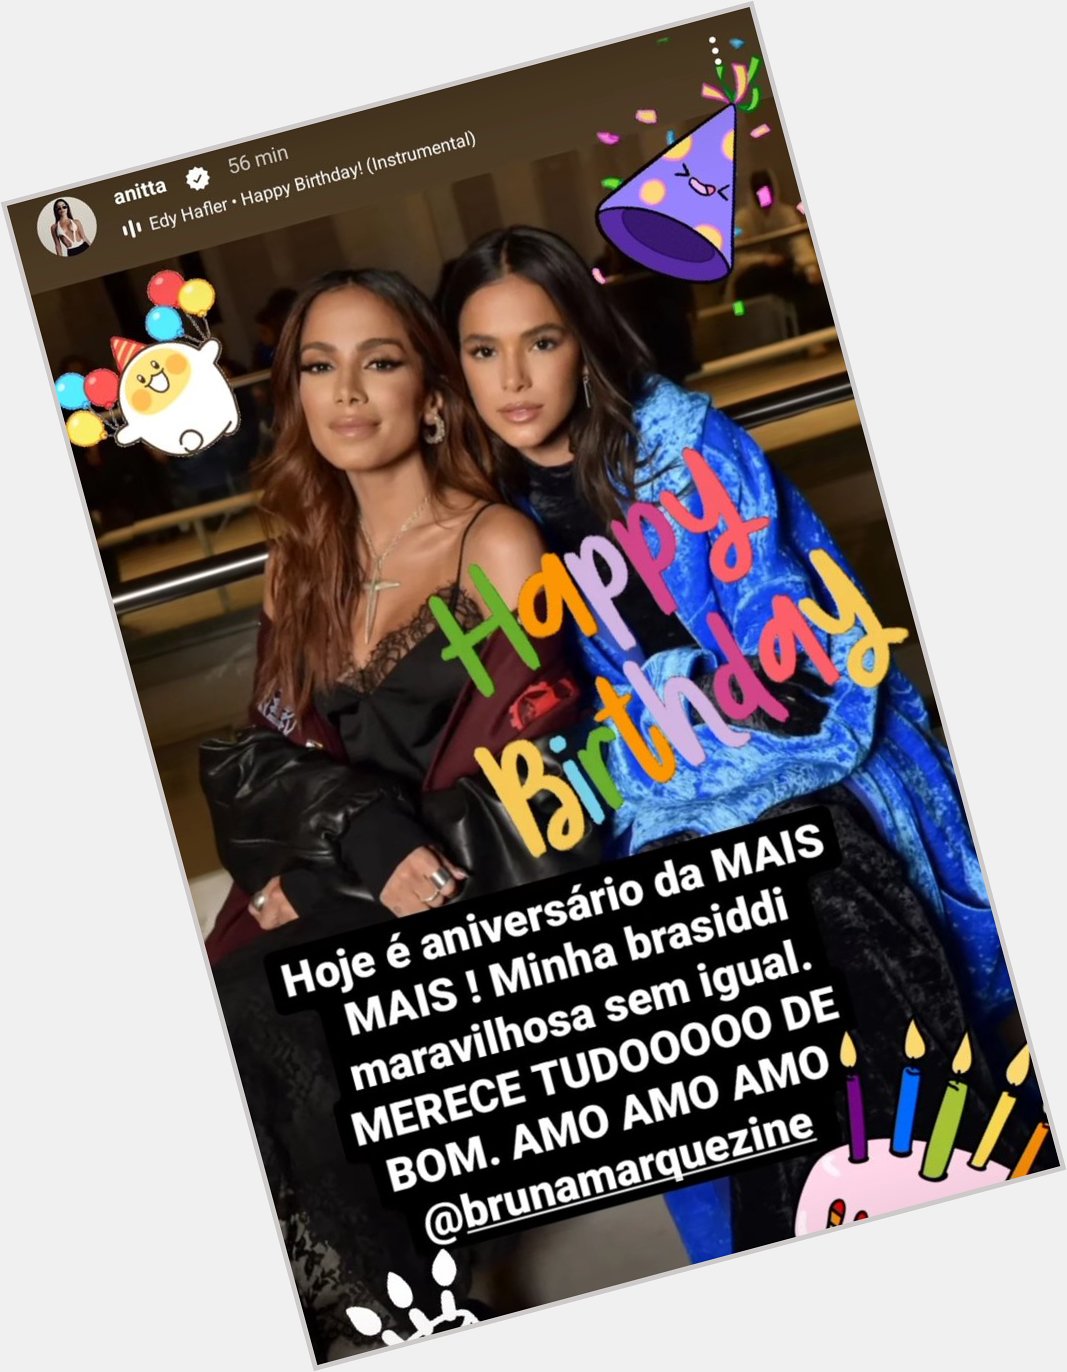 Anitta wishing happy birthday to her friend Bruna Marquezine. 